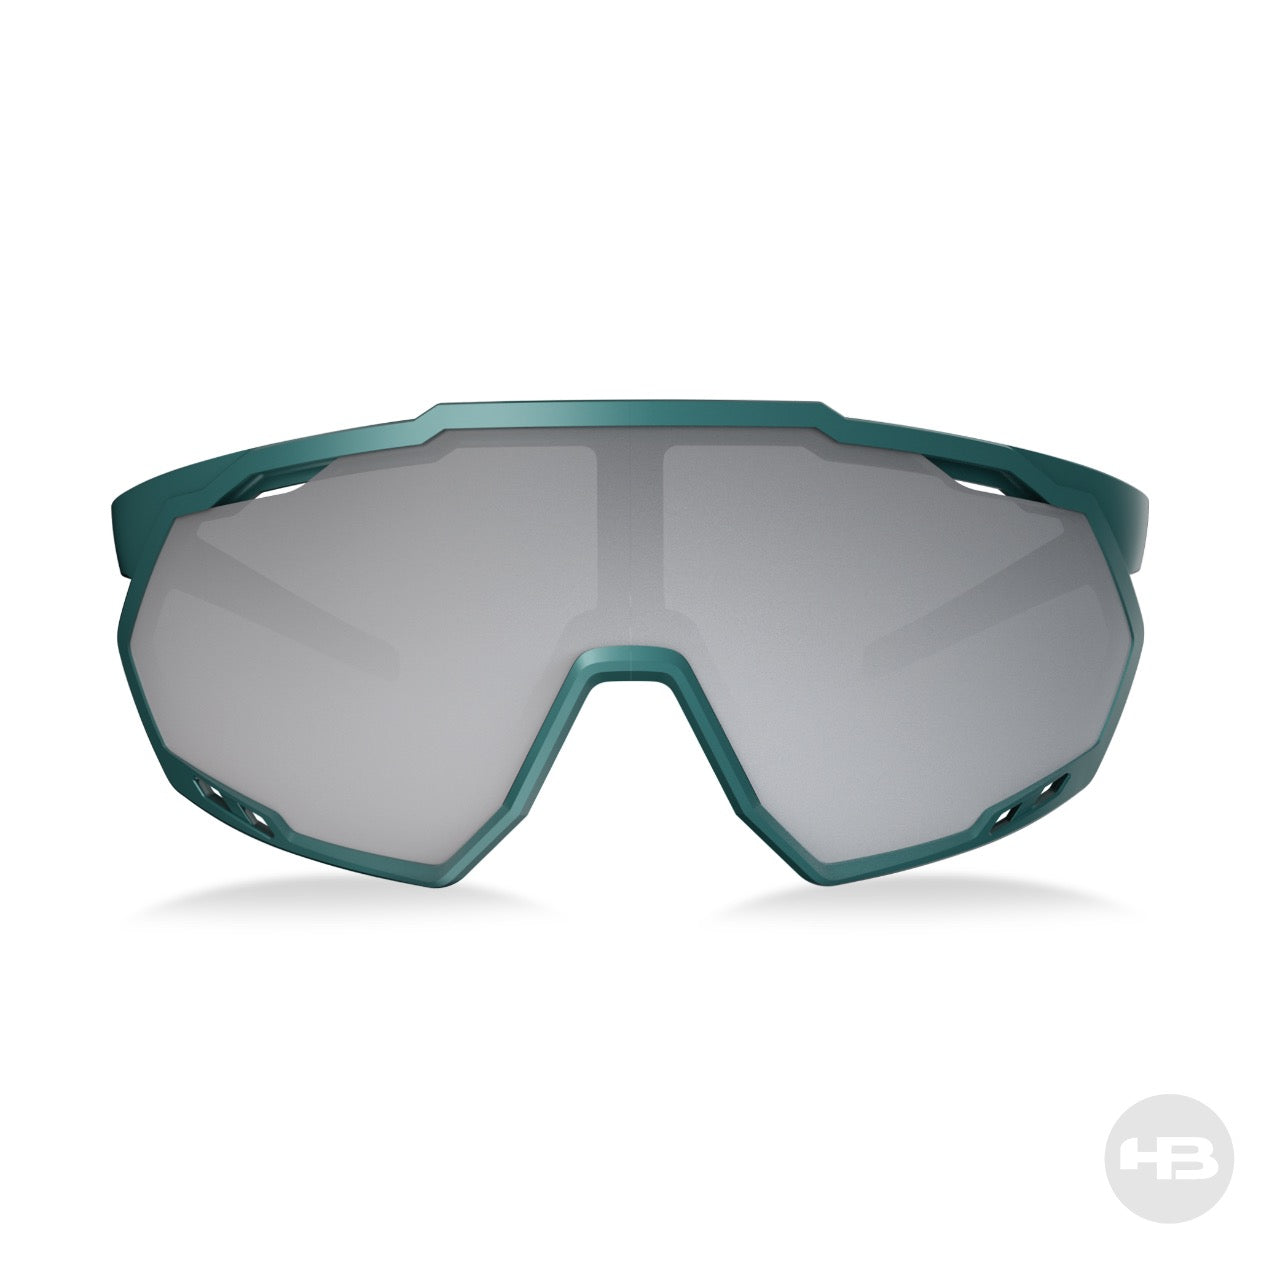 Óculos de Sol HB Spin Gradient Dark Green/ Silver/ Cristal - Lente 14,6 cm - Loja HB